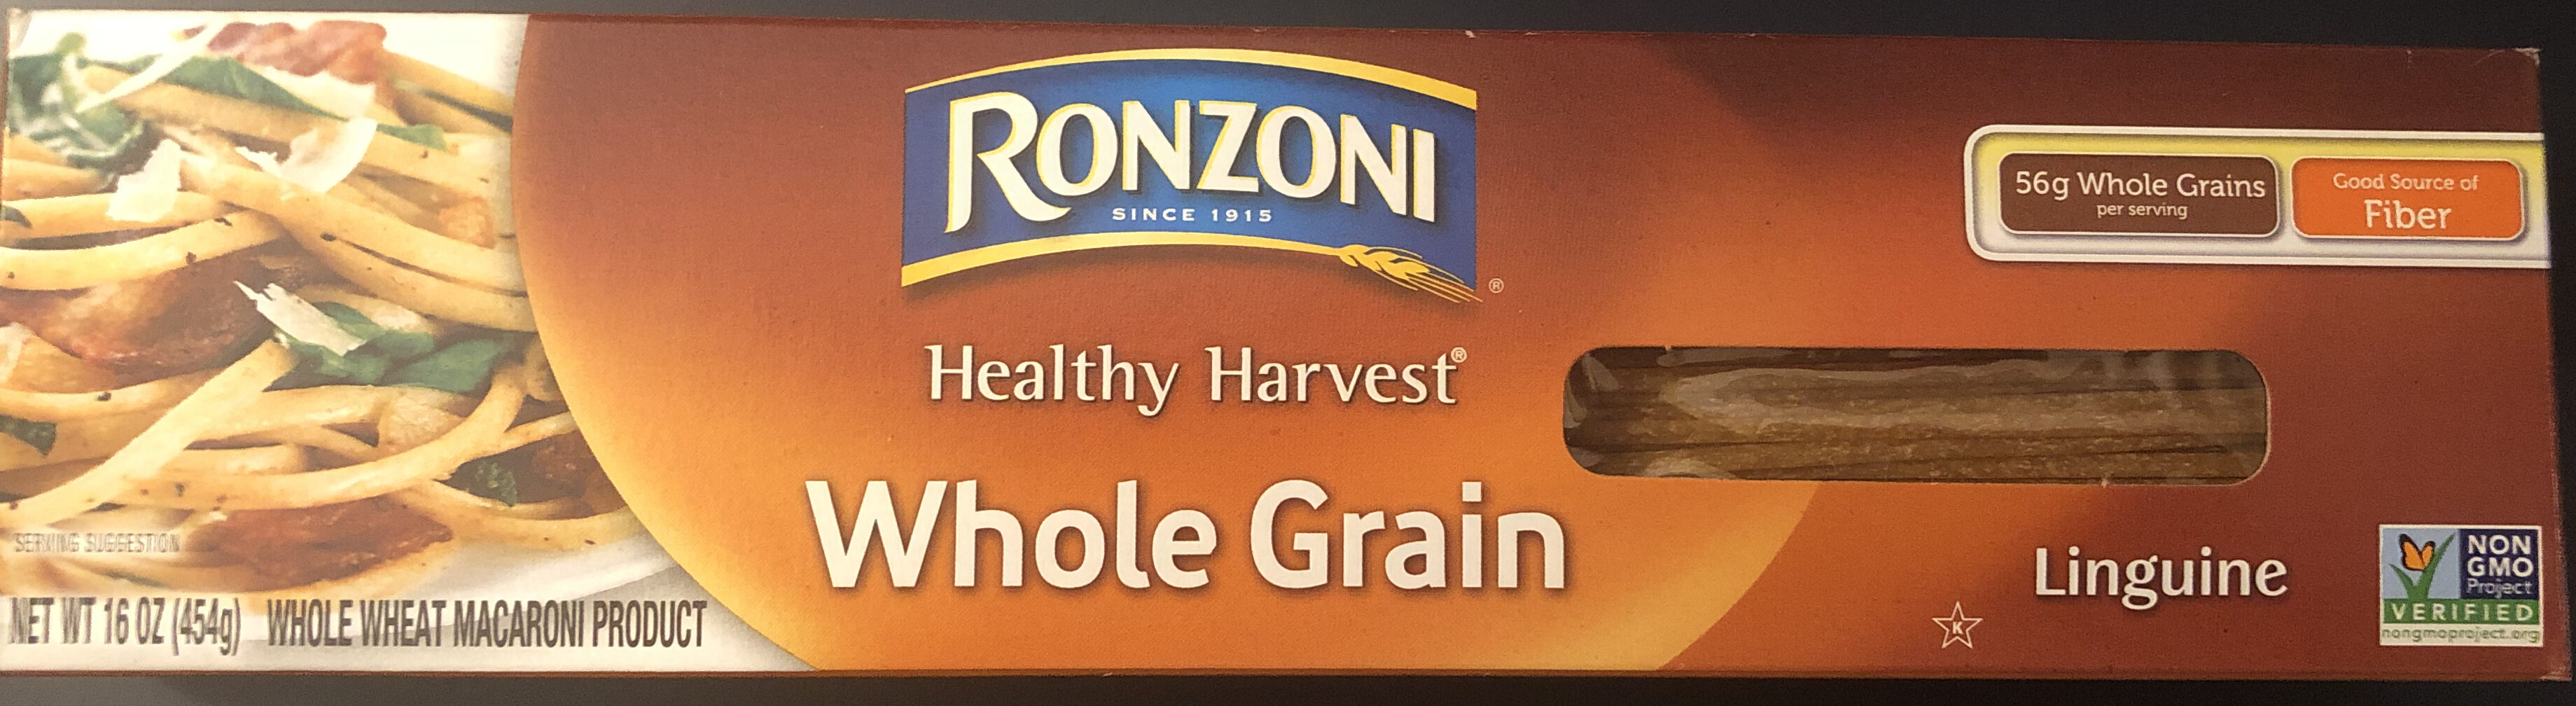 100% whole grain wheat pasta, linguine - Product - en